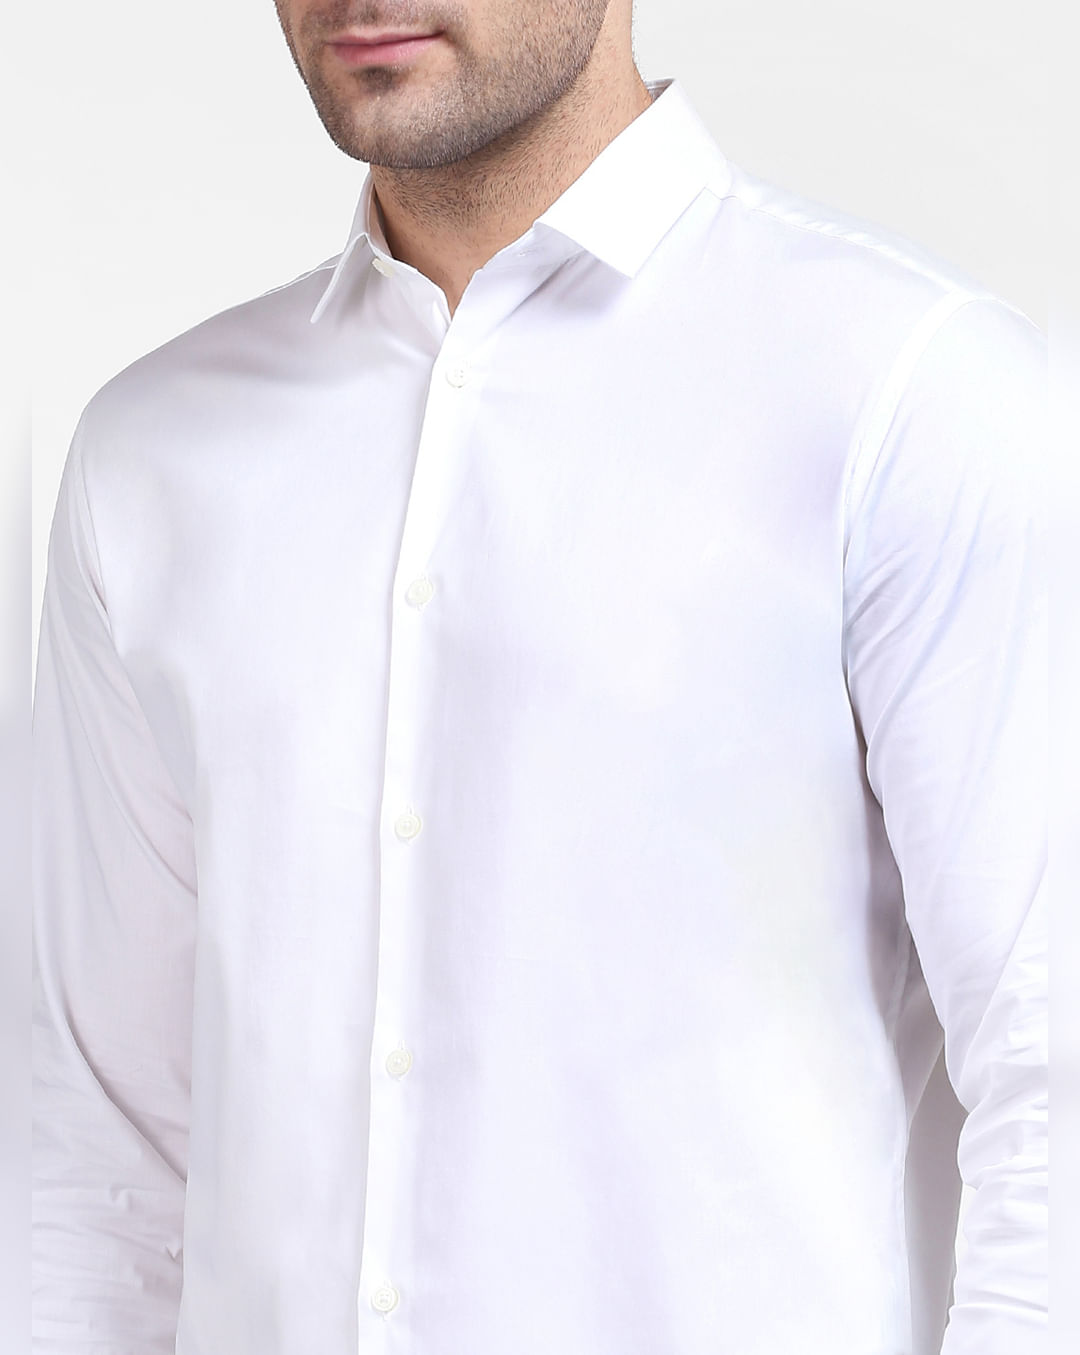 White SELECTED at Sleeves Full 200658602 Men Online for Buy | HOMME Shirt Formal